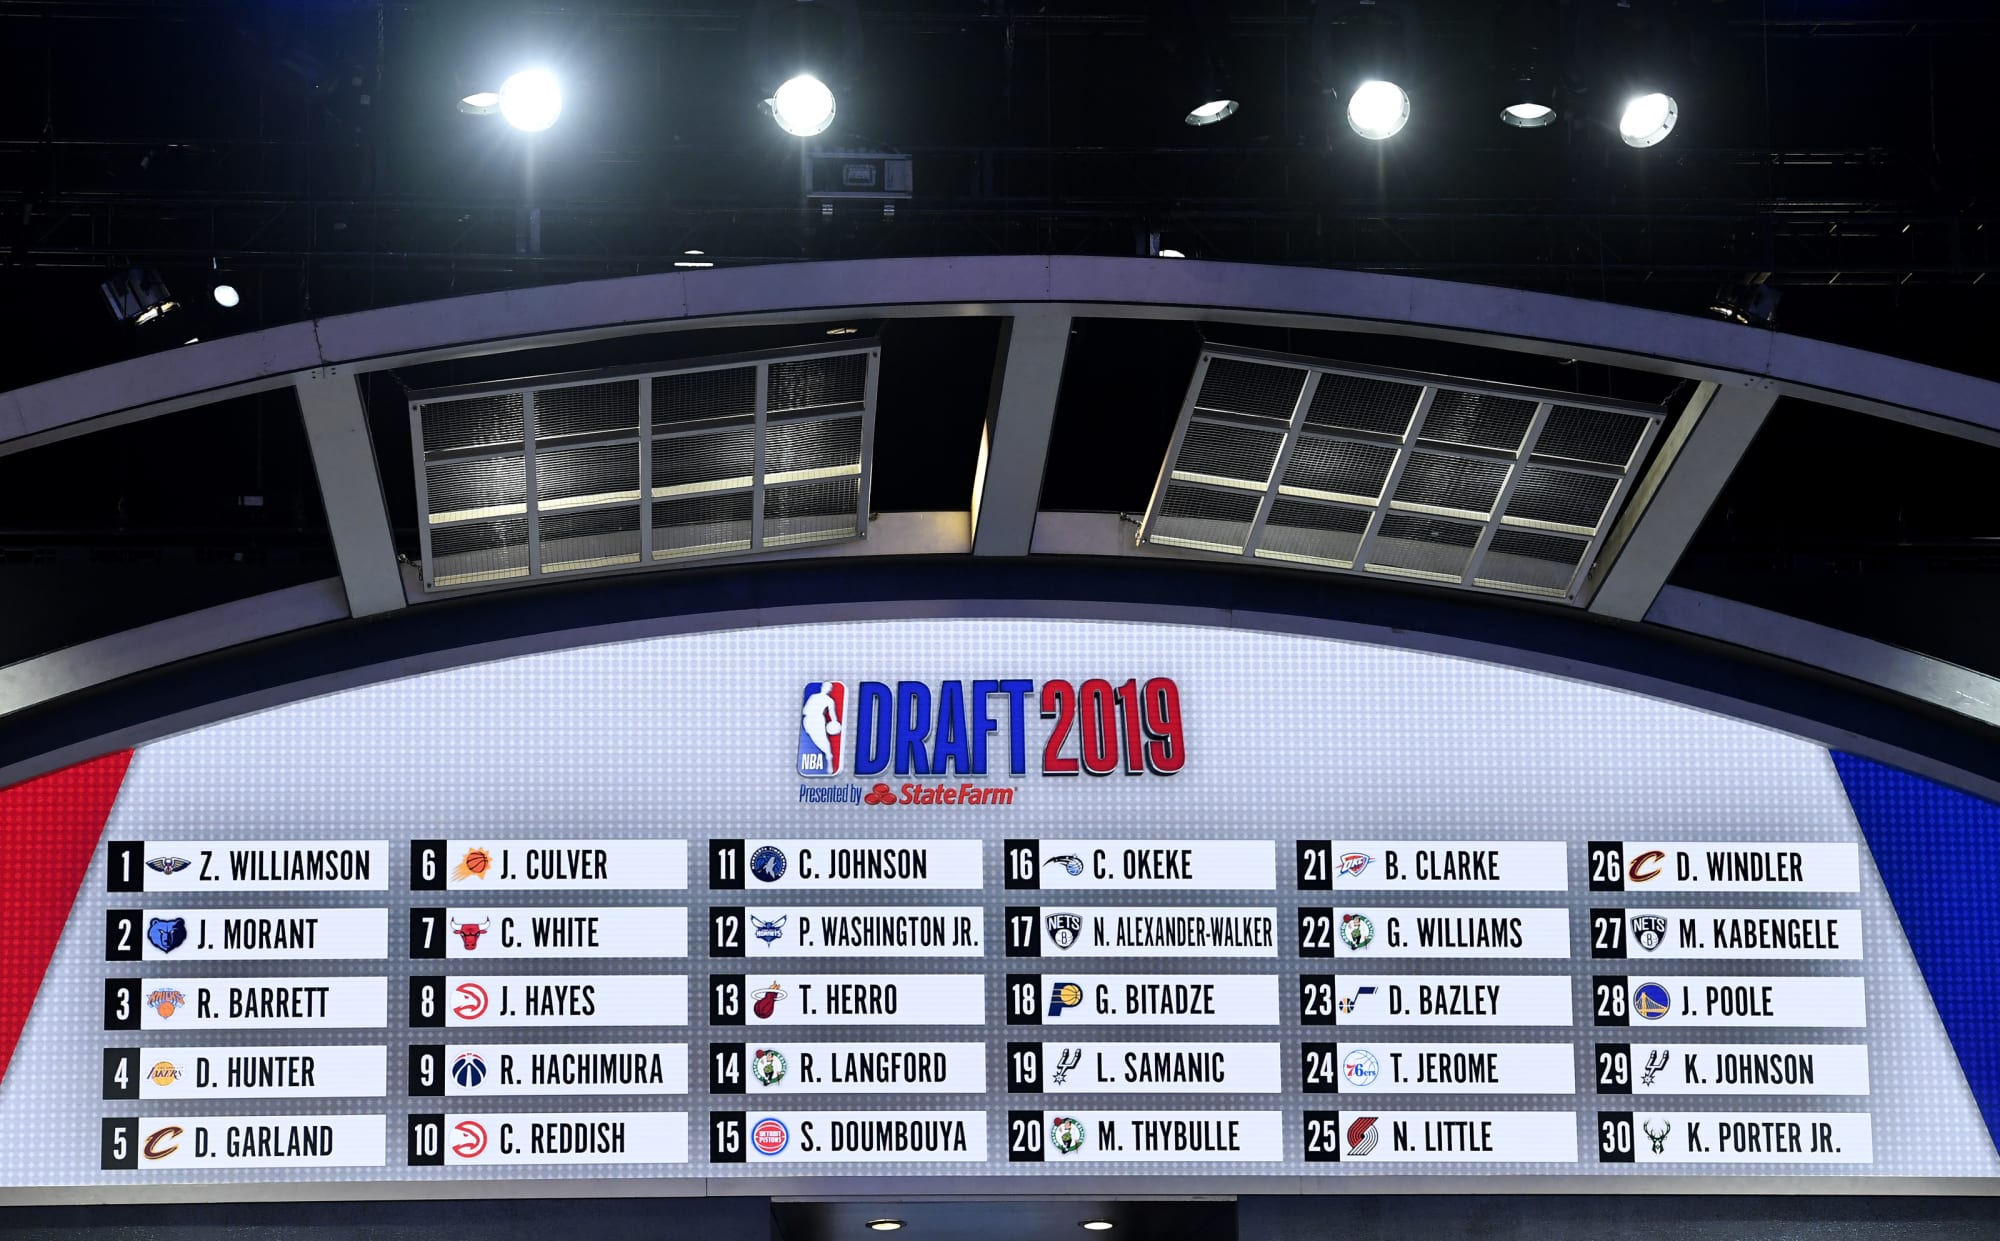 NBA Mock Draft: Lakers take Okafor No. 2 — or do they trade for